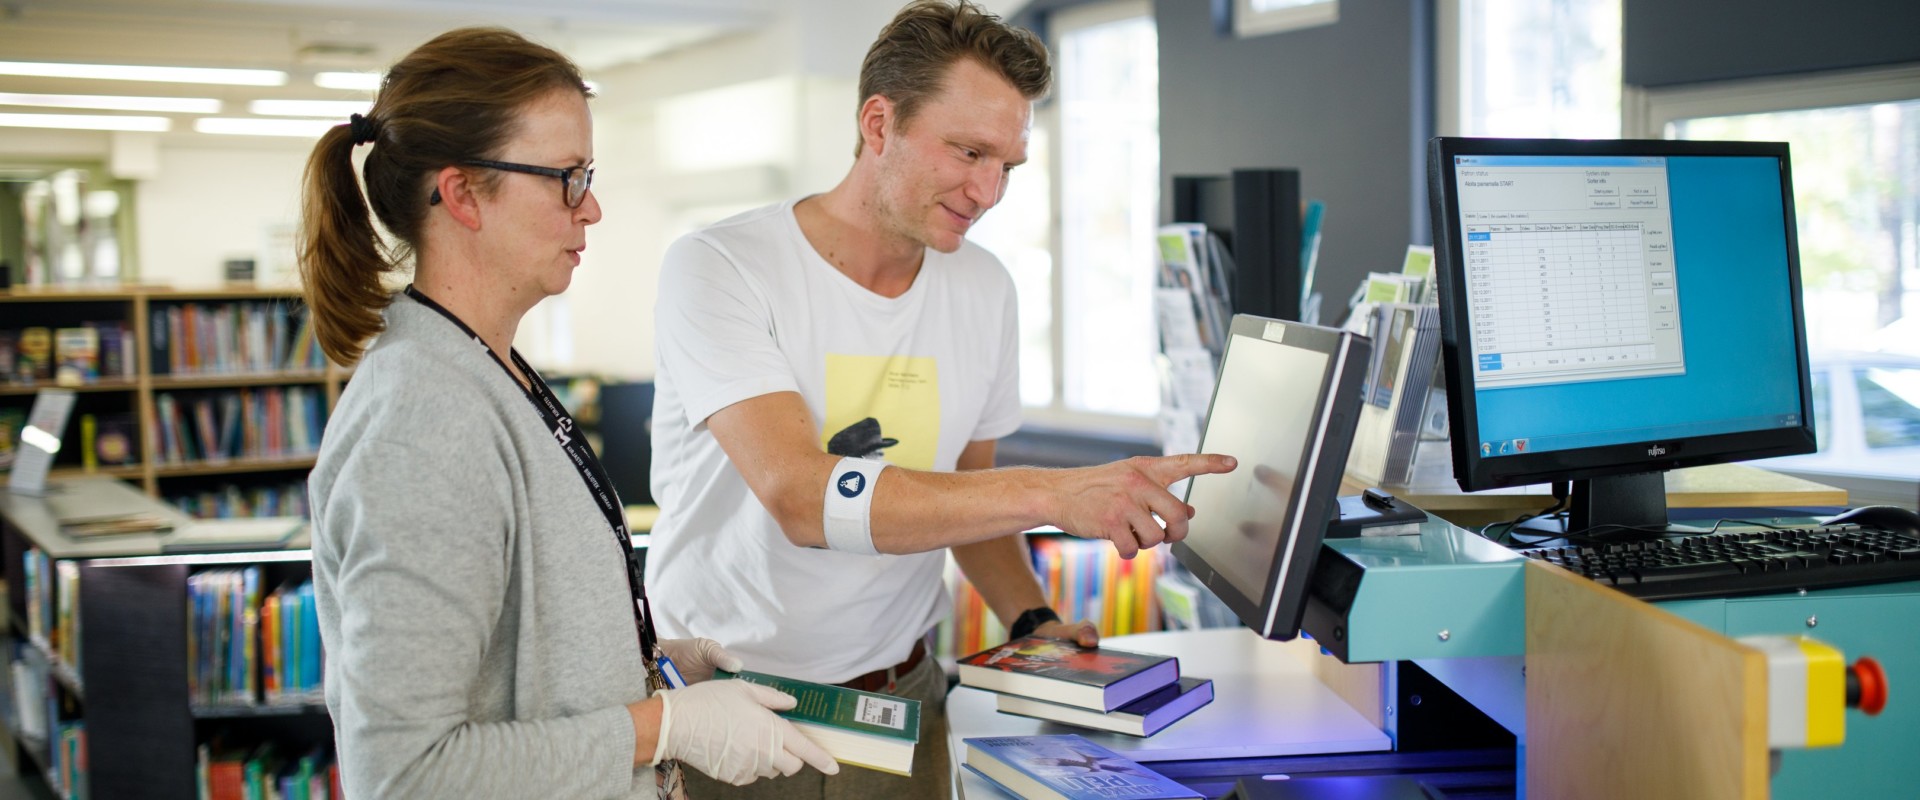 Kirjaston työntekijä opastaa asiakasta lainausautomaatin käytössä Kärpäsen lähikirjastossa Lahdessa.